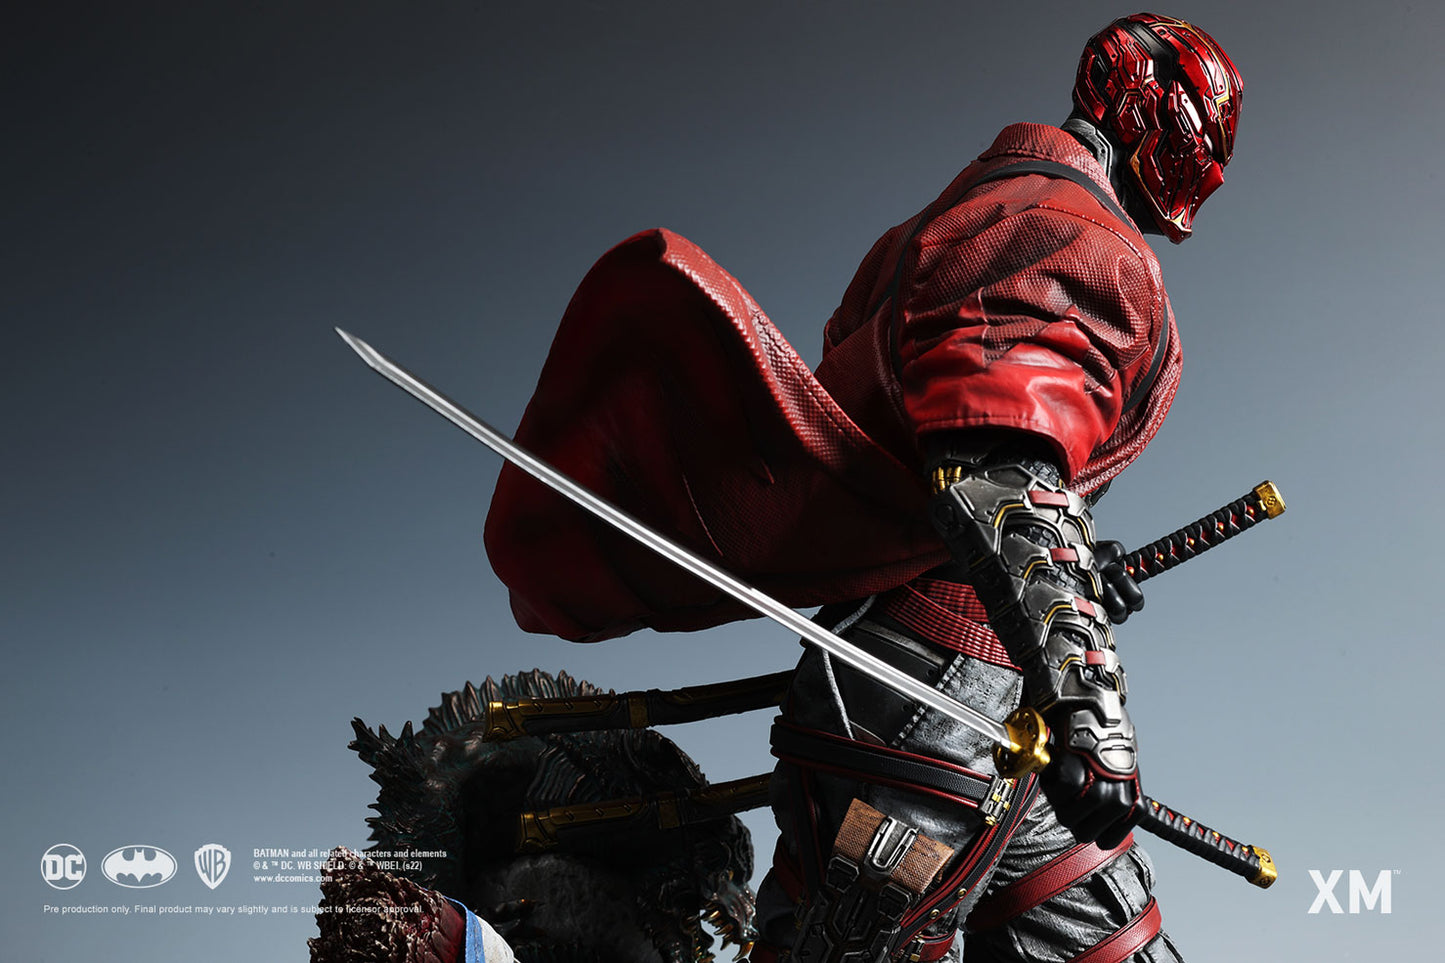 XM Studios Red Hood - Samurai 1/4 Premium Collectibles Statue